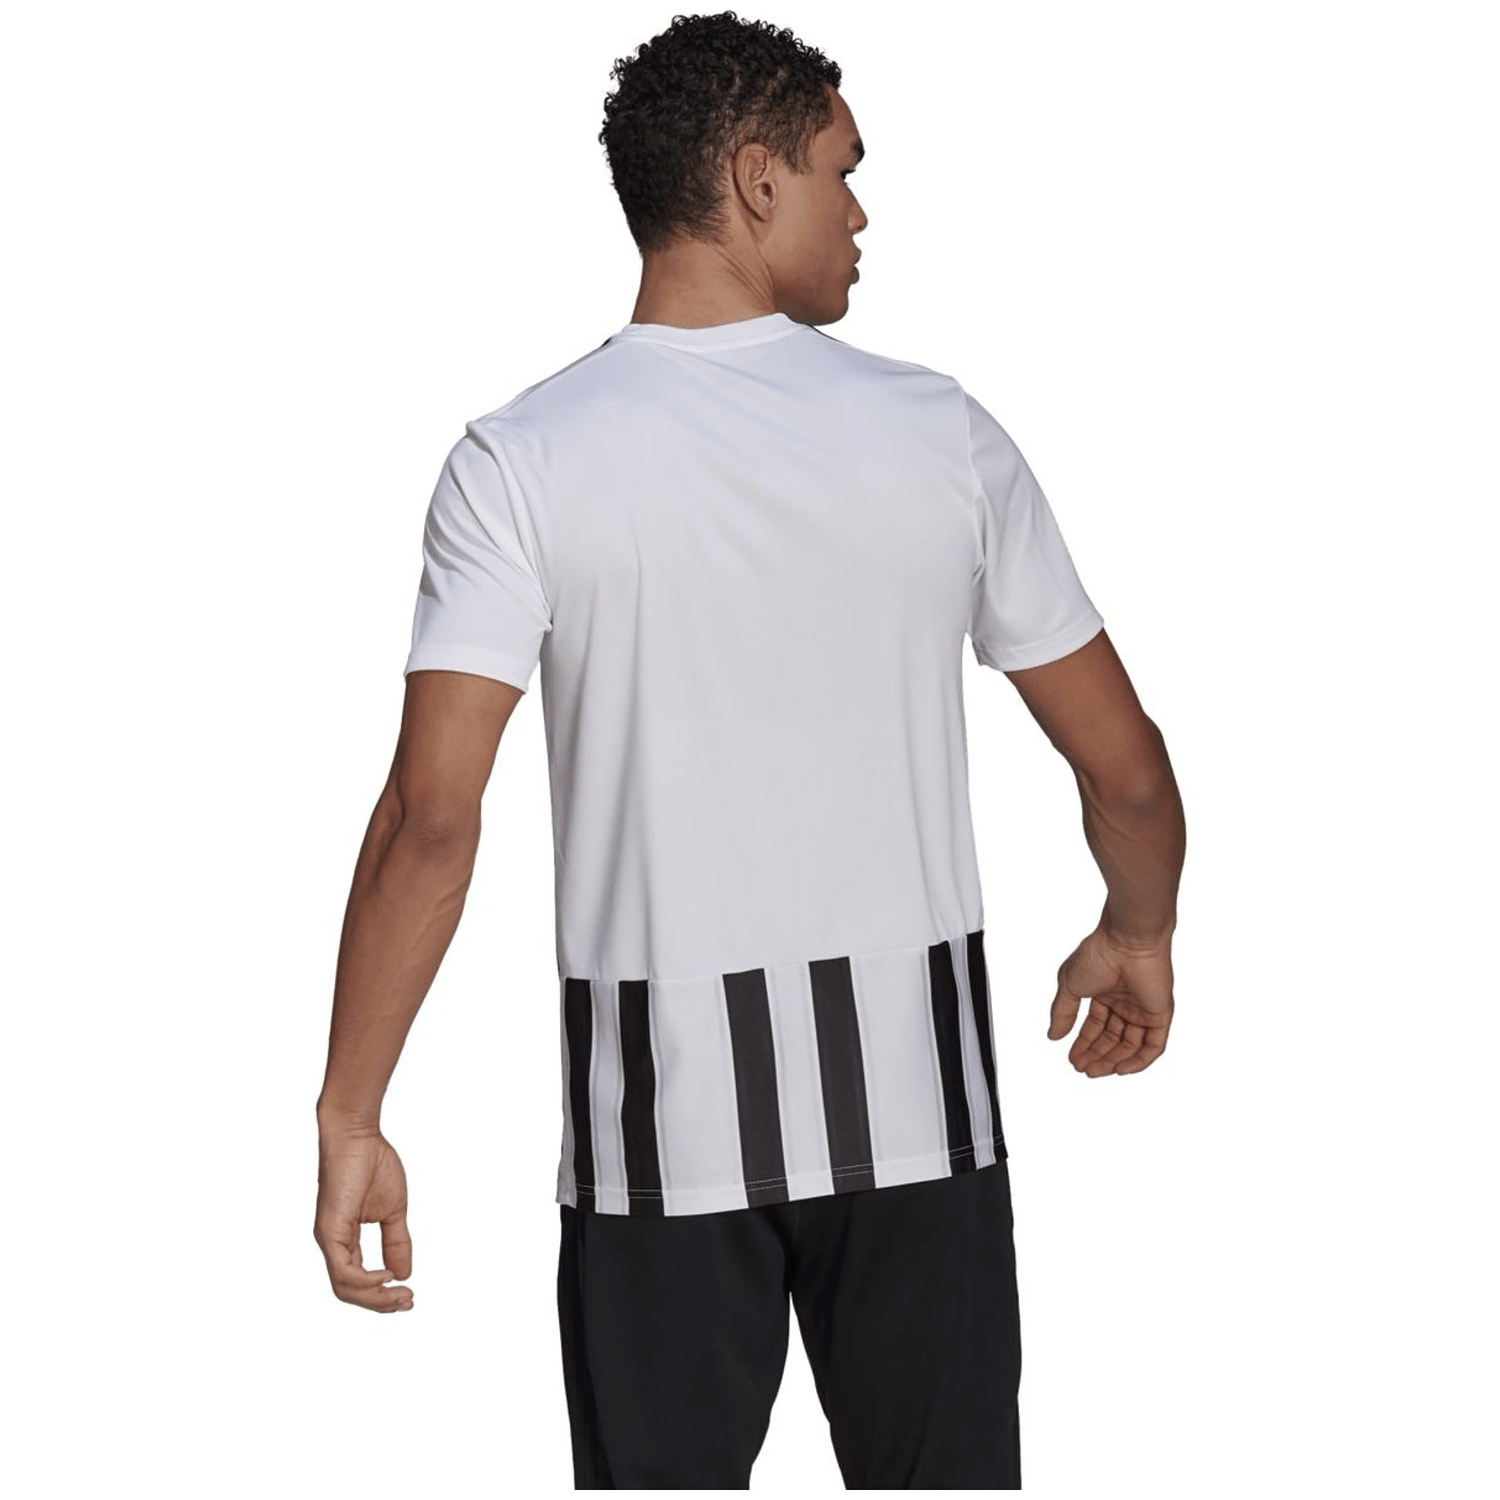 Adidas Striped 21 Trikot Herren